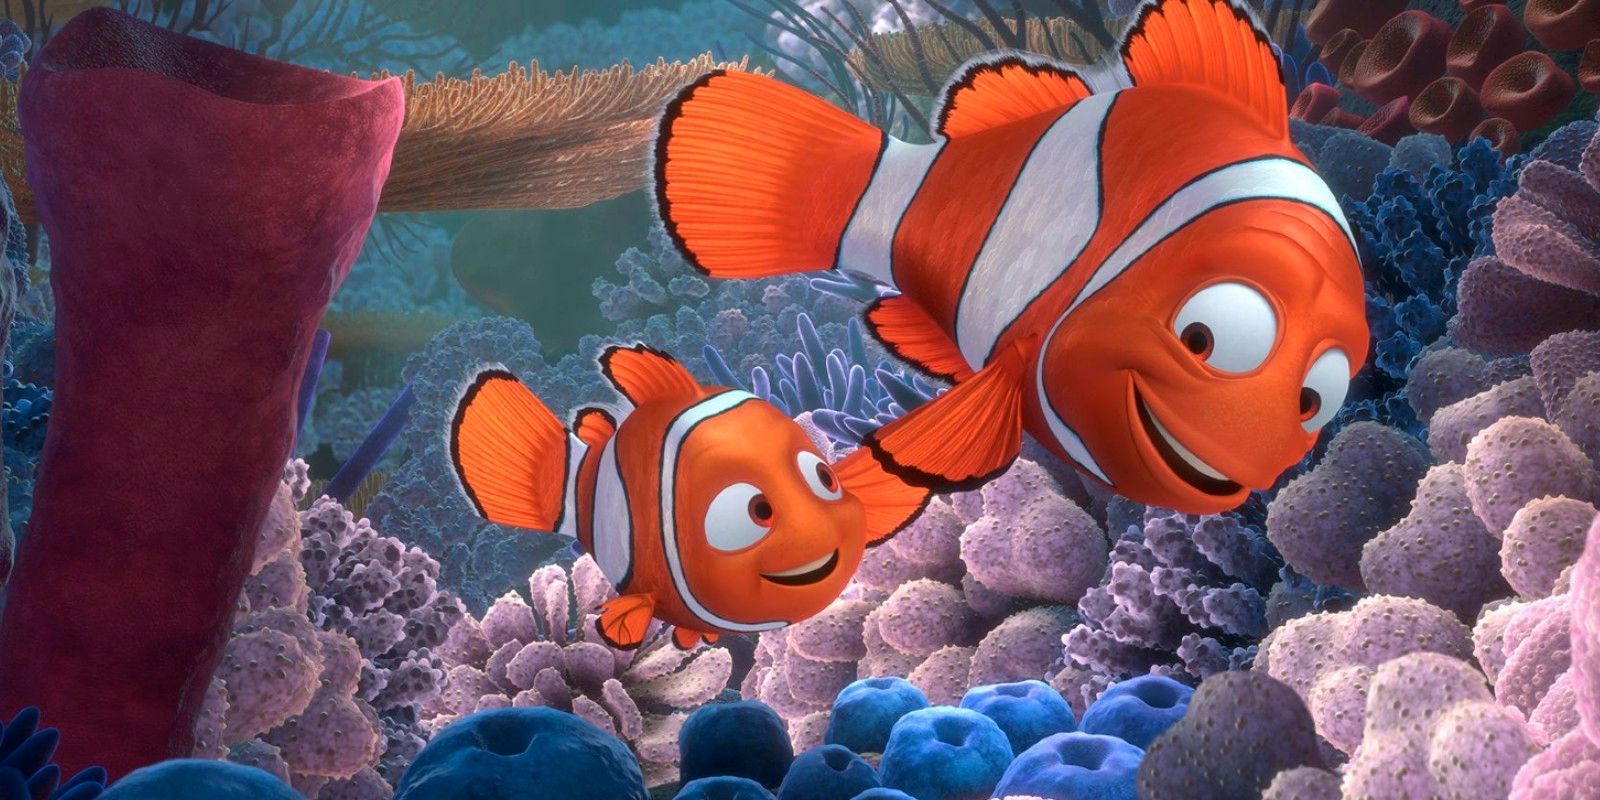 Se rumorea que Finding Nemo Show para Disney + está en desarrollo